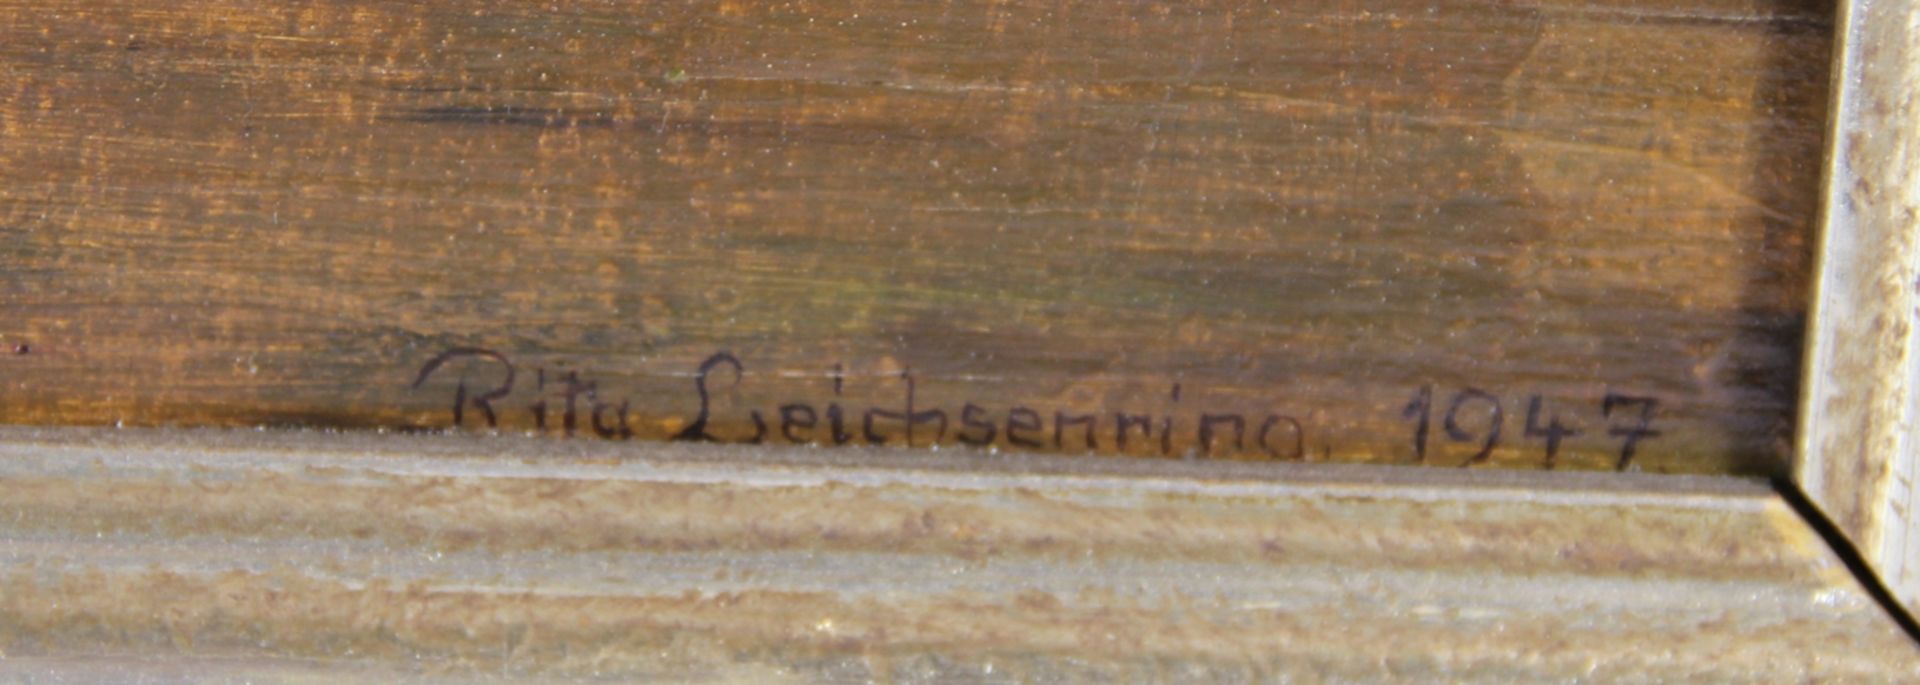 Leichsenring, Rita - Image 2 of 3